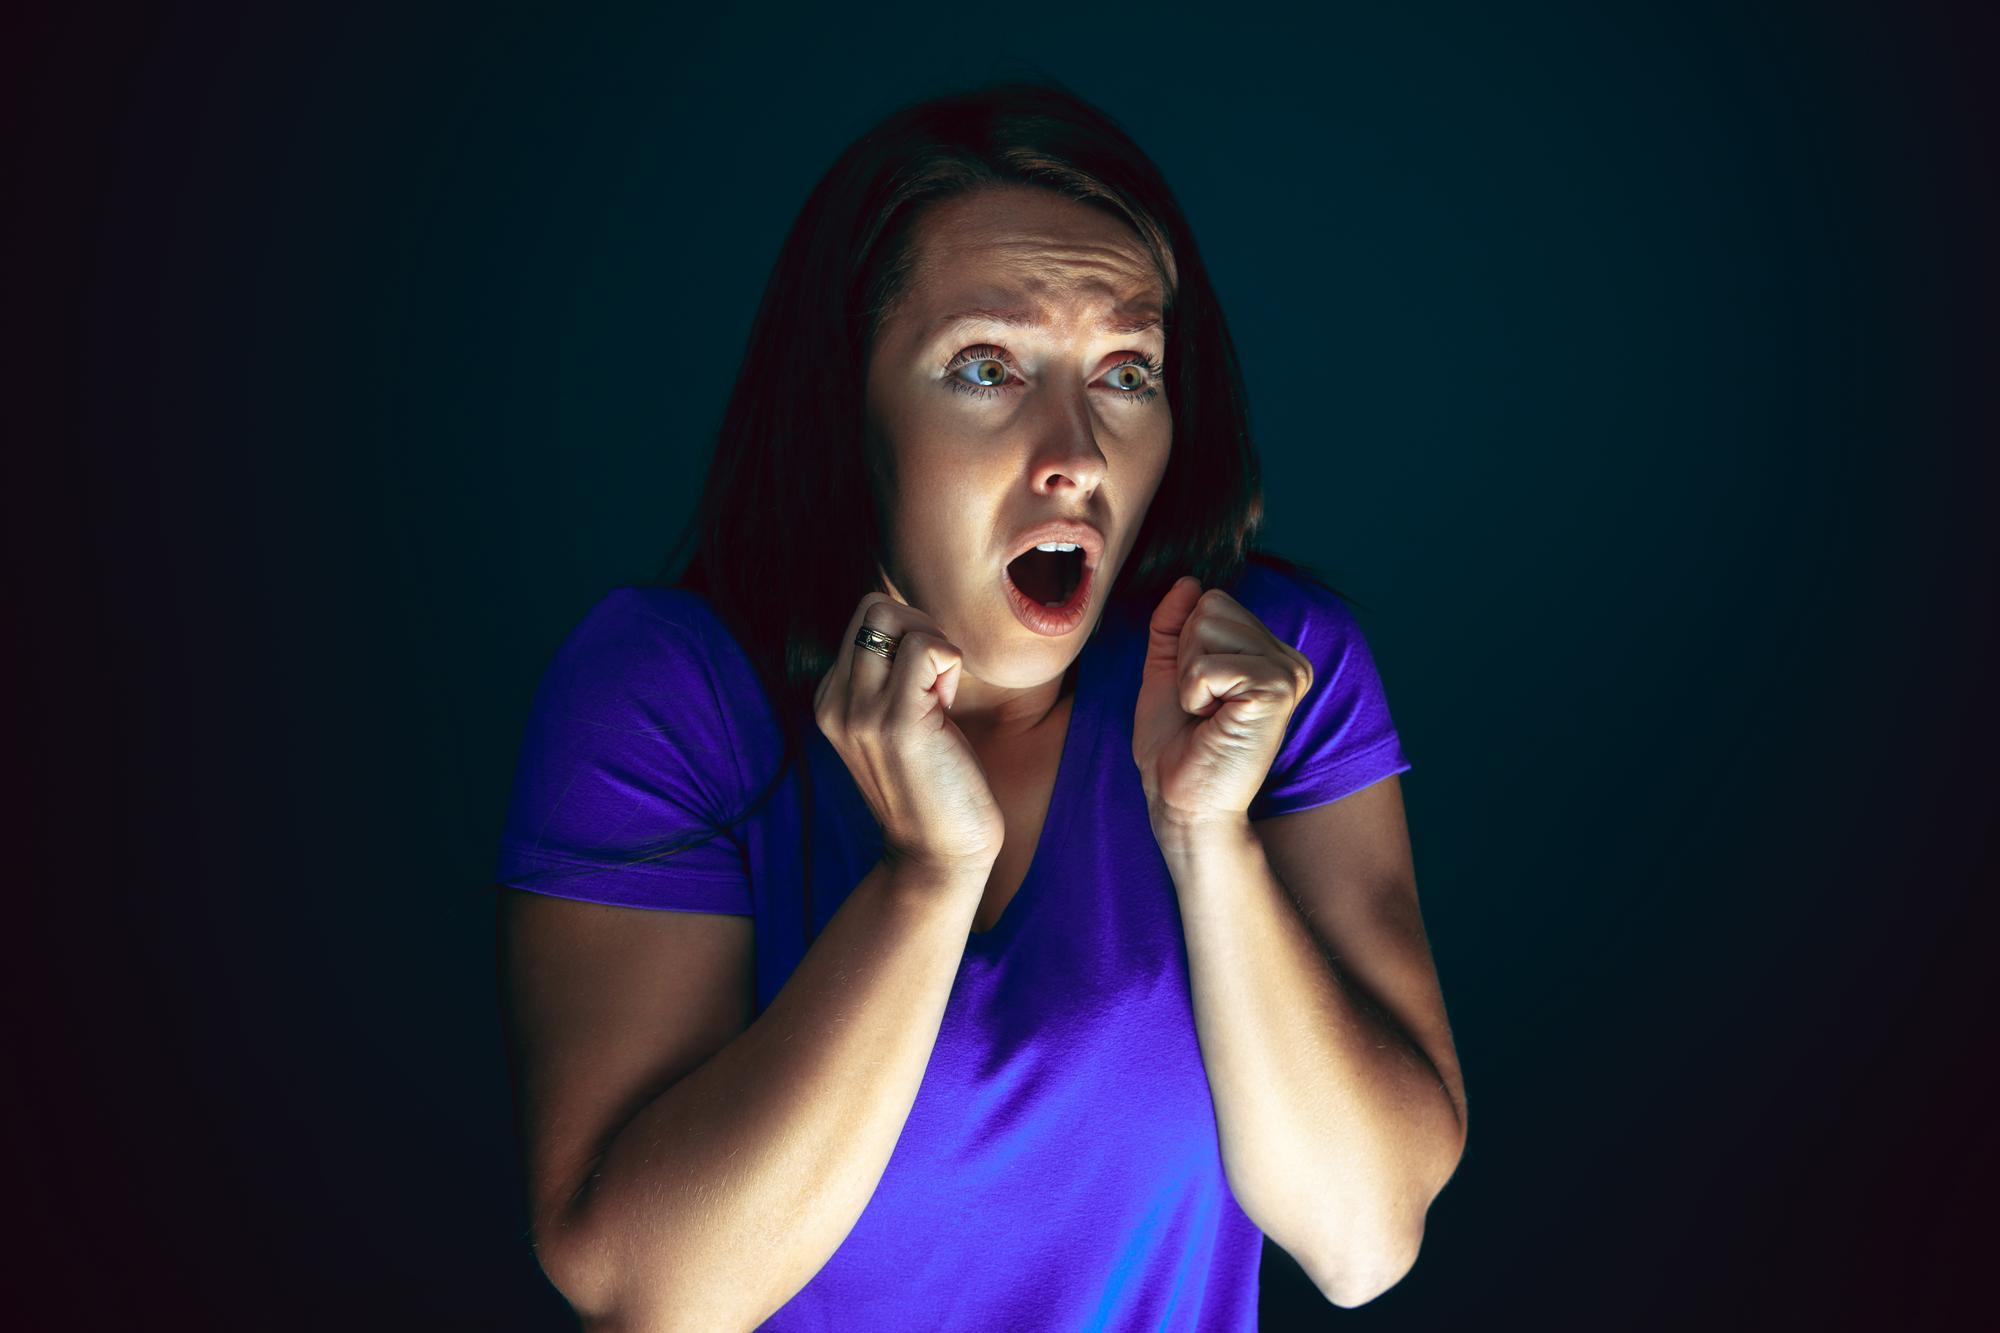 Une femme réagissant en état de choc à quelque chose | Source : Freepik